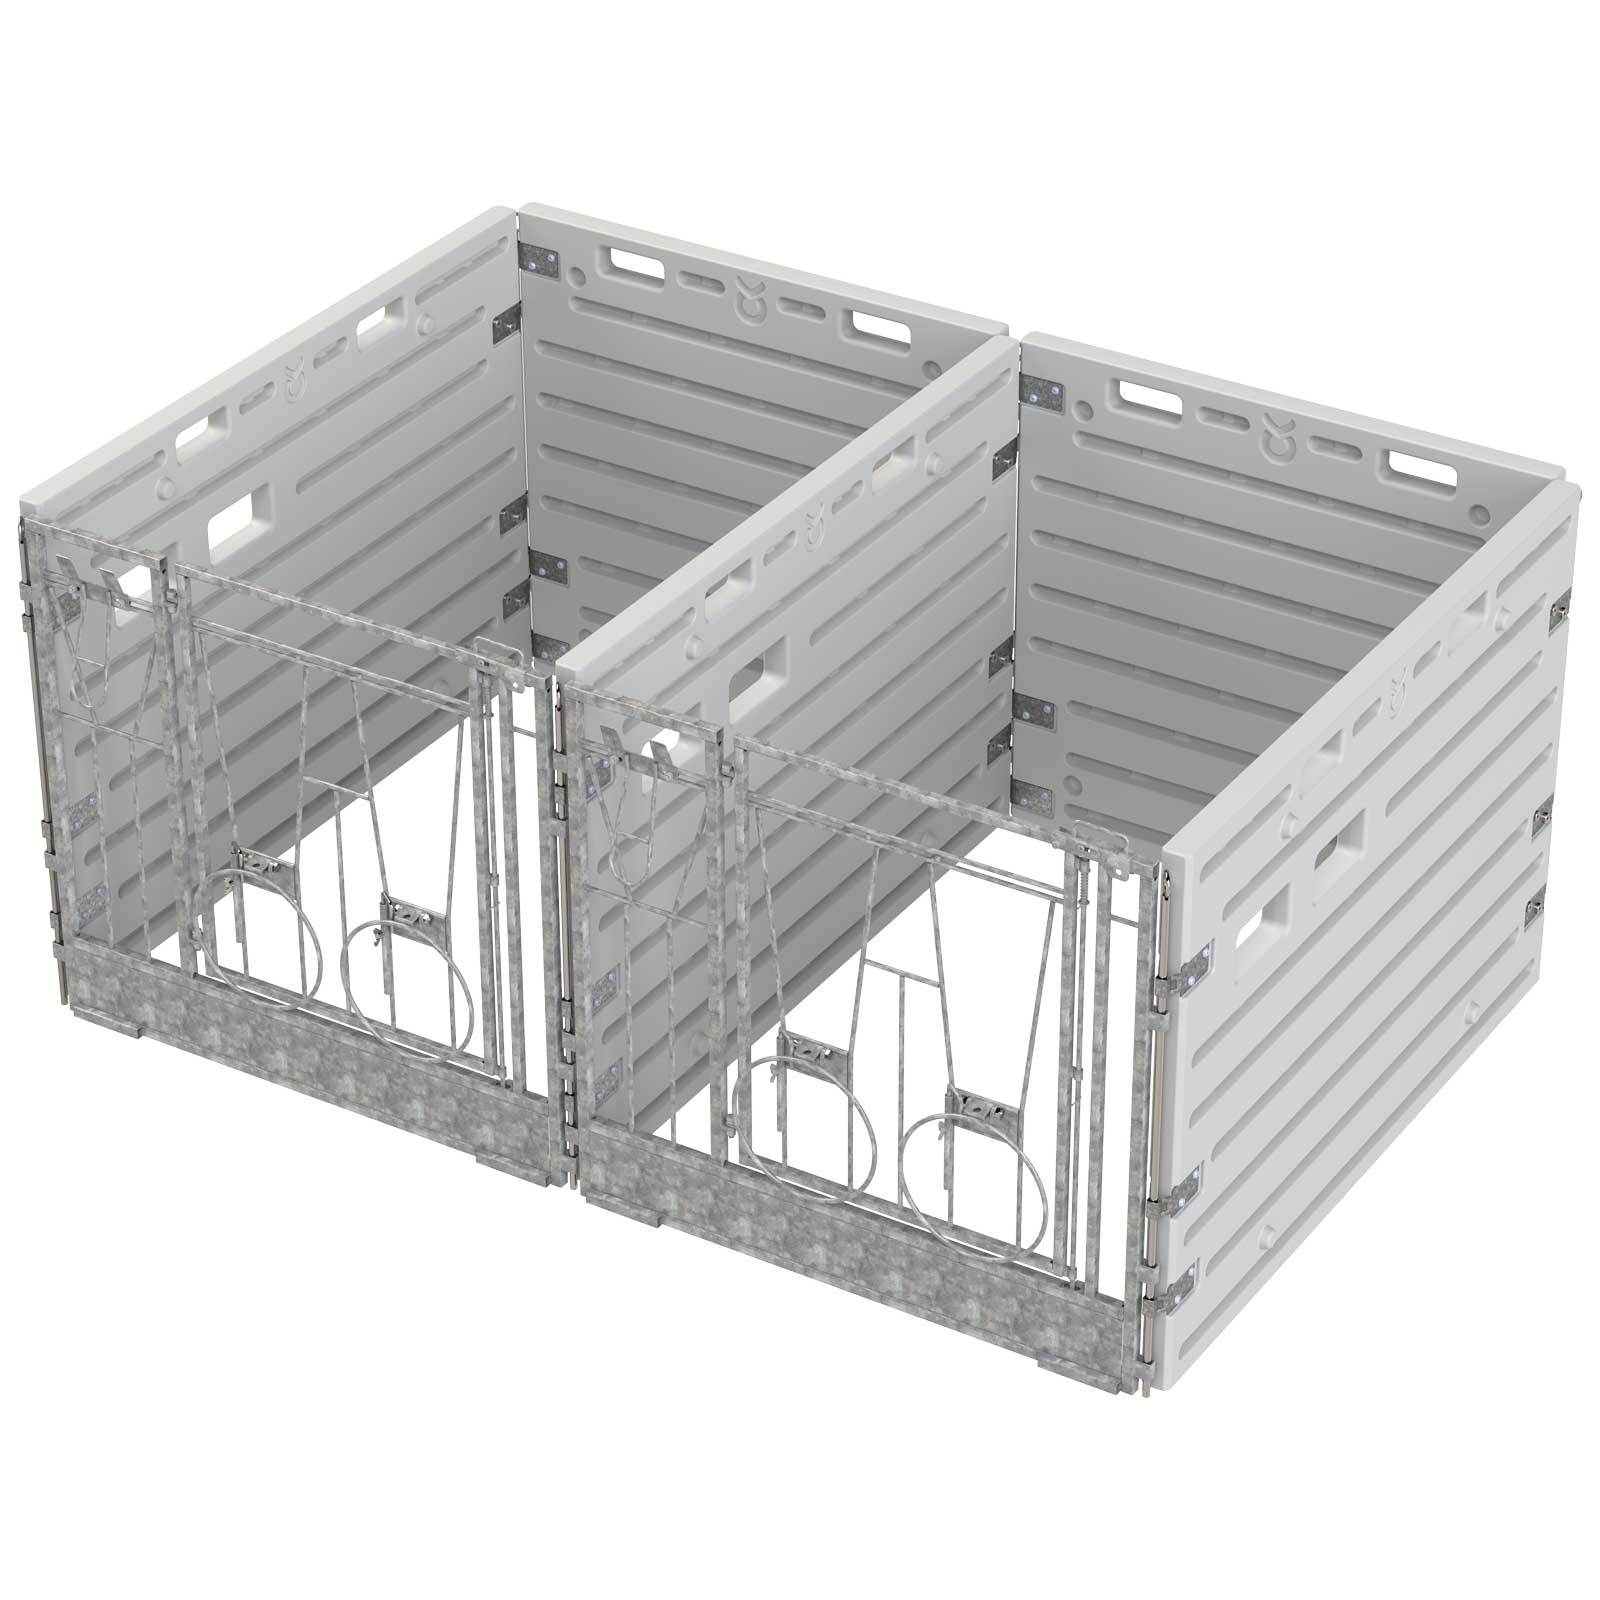 Case a veaux modulaire - doubles box indépendants